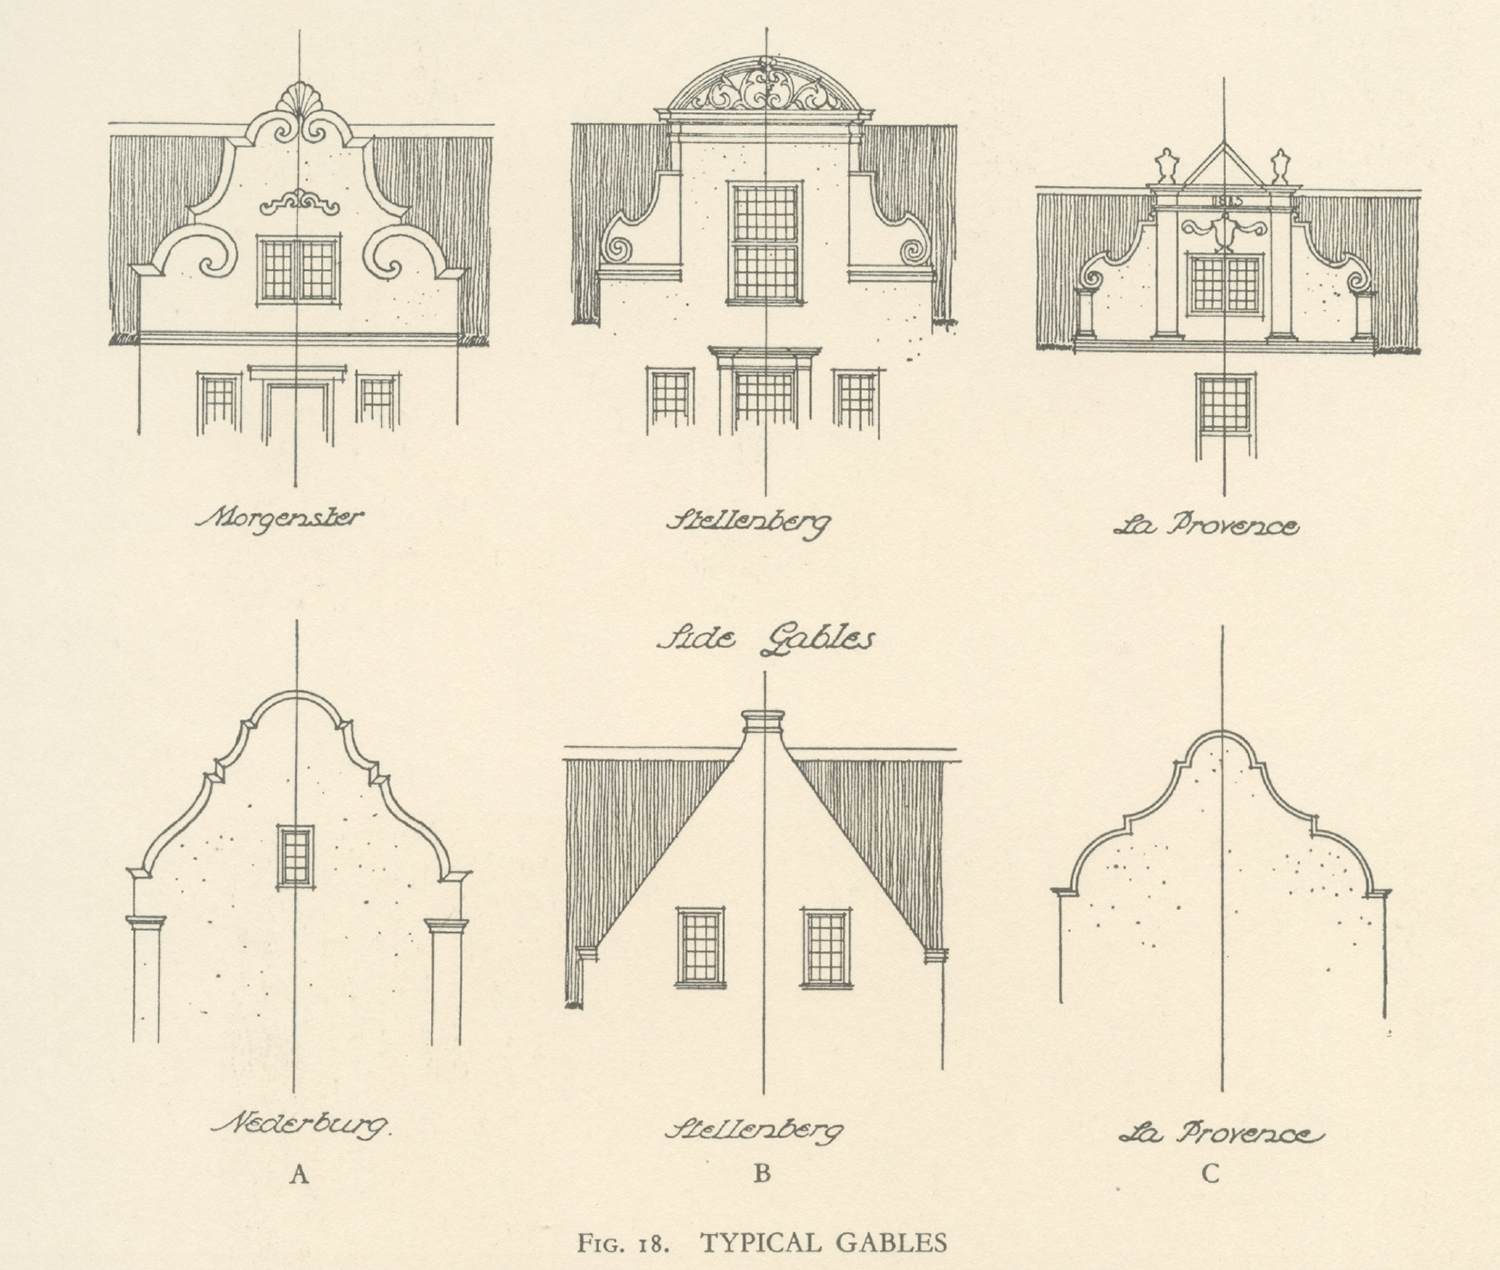 Typical Gables, Cape Dutch Architecture